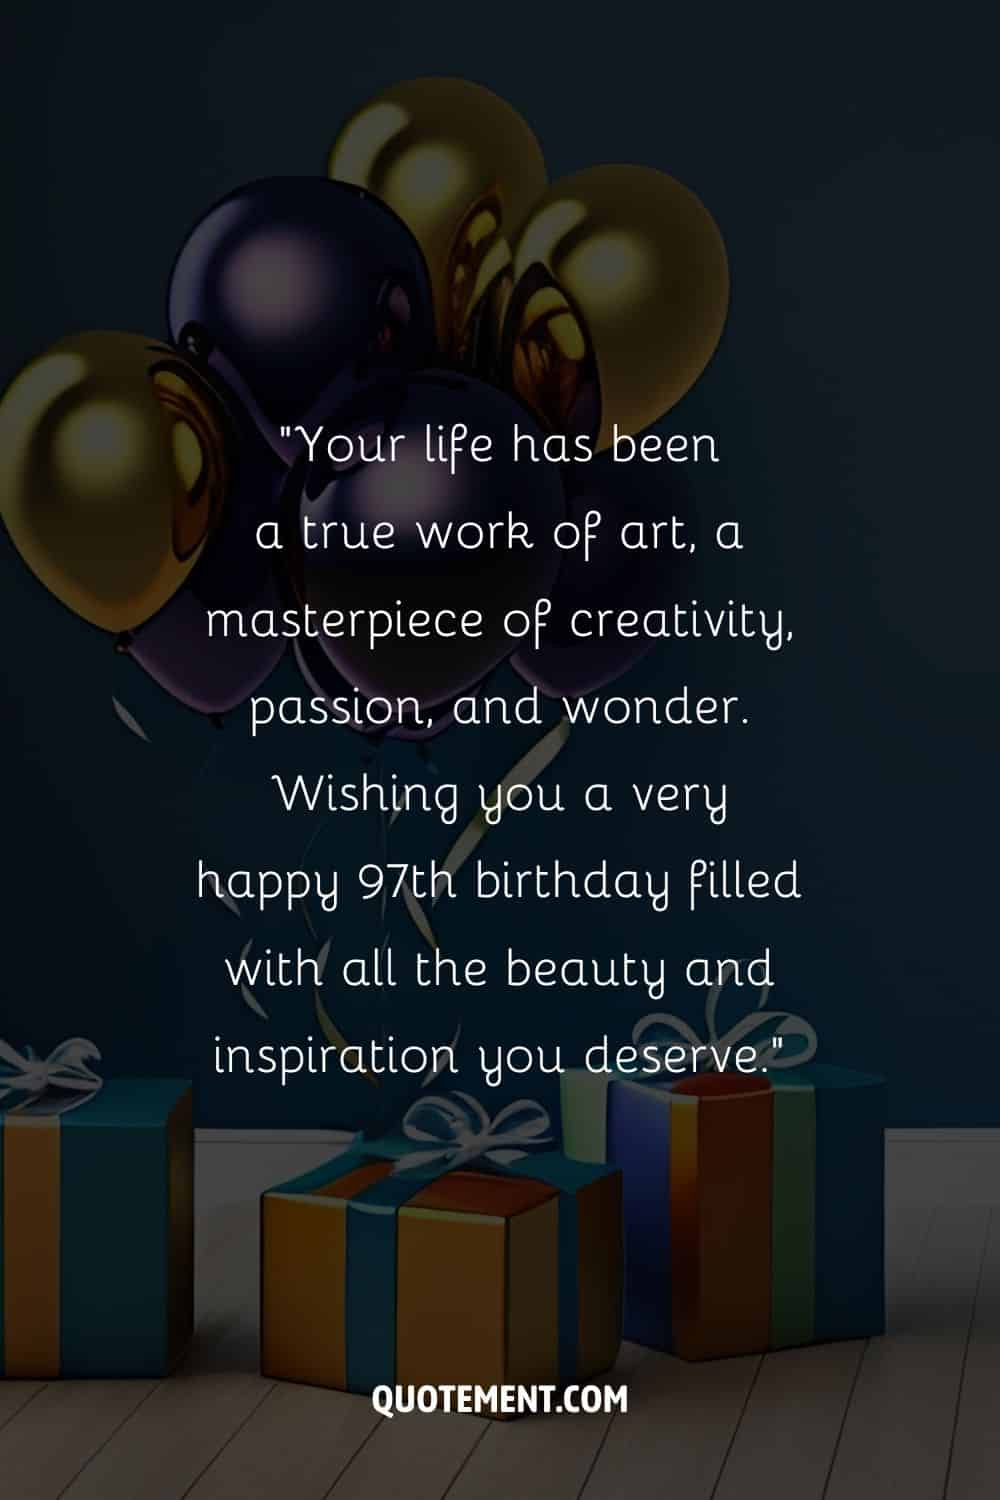 Precioso mensaje para su 97 cumpleaños y regalos y globos de fondo, también